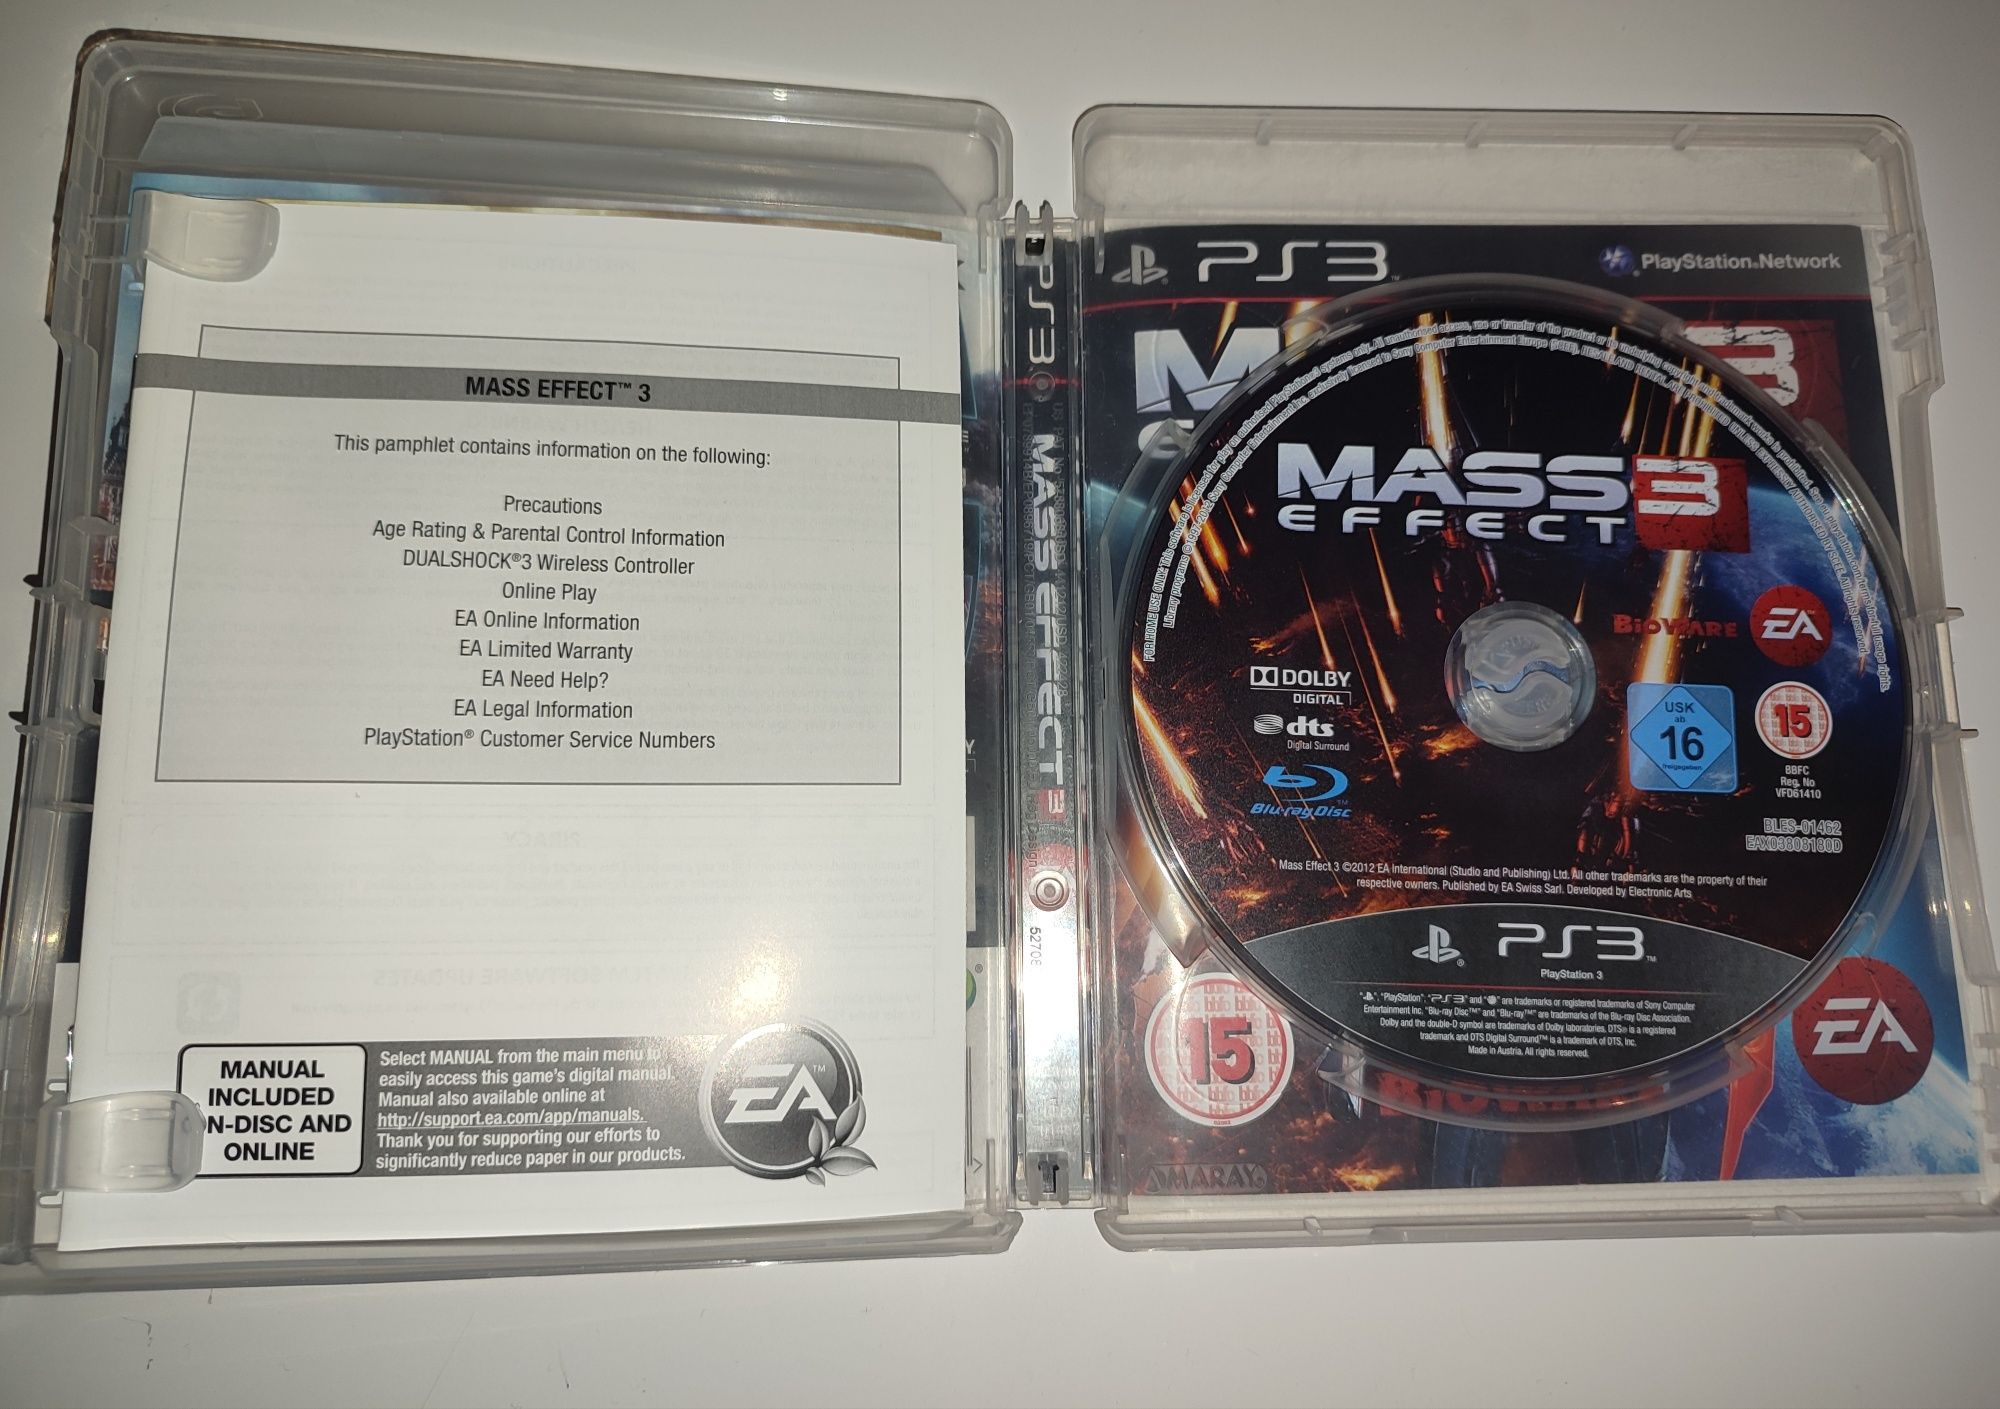 Gra Ps3 Mass Effect 3 III gry PlayStation 3 Hit Sniper UFC NFS